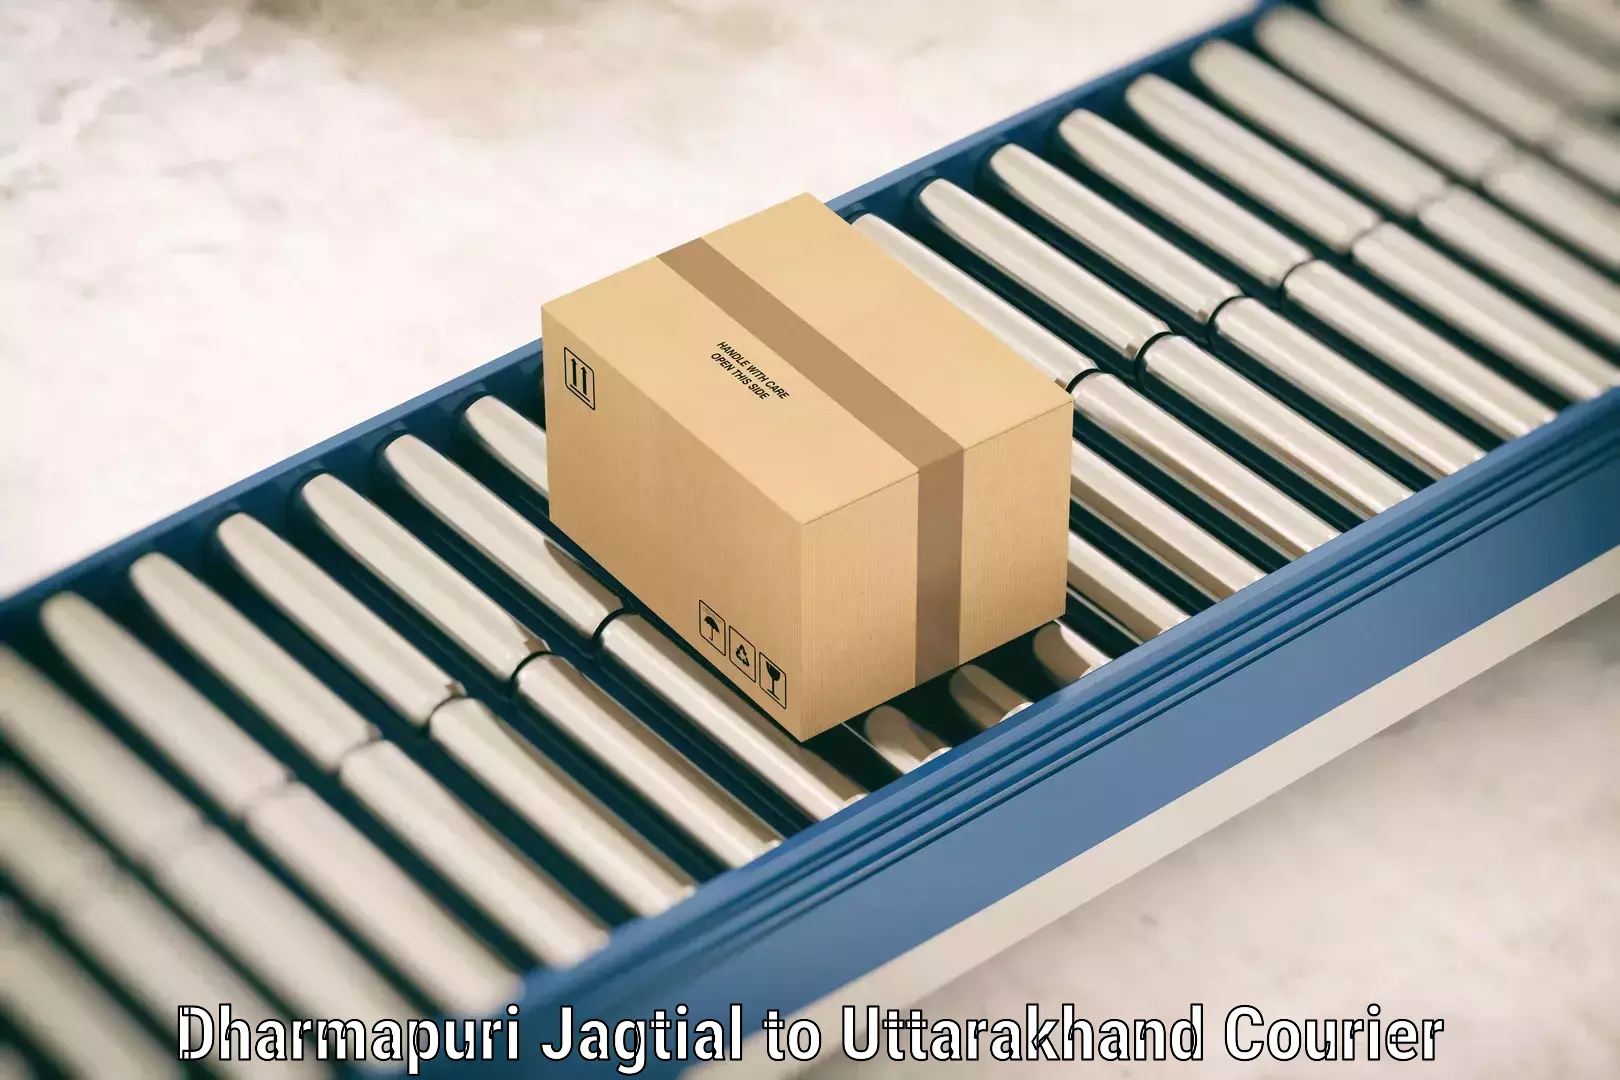 Luggage delivery network Dharmapuri Jagtial to Champawat